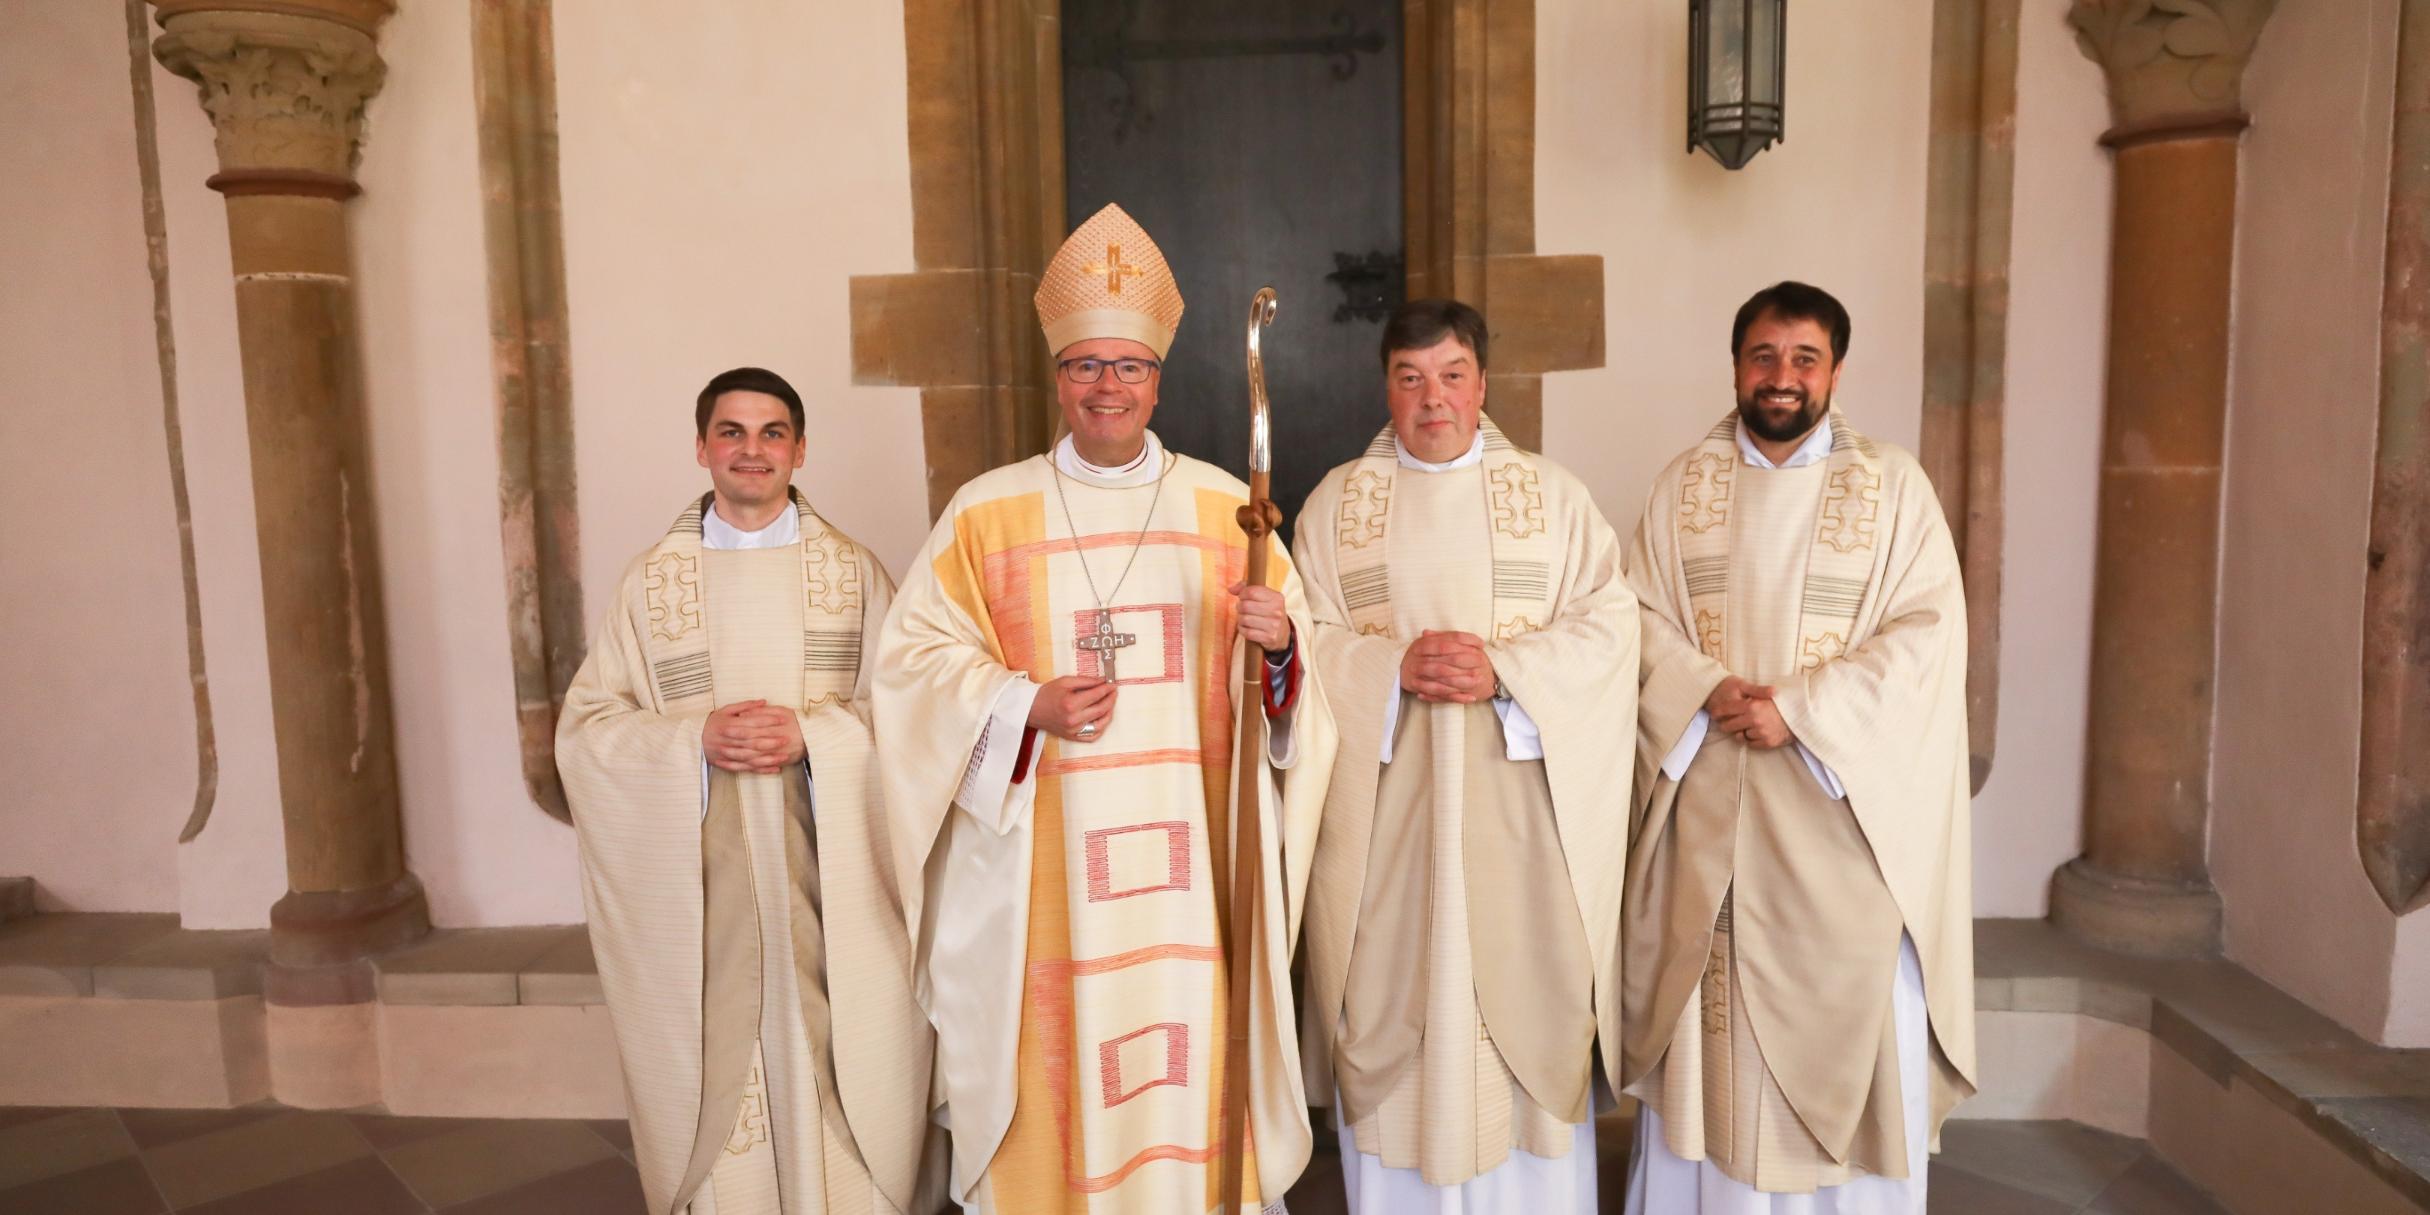 Bischof Ackermann mit den Neupriestern Kevin Schirra, Rudolf Esser und Michael Meyer (vlnr).